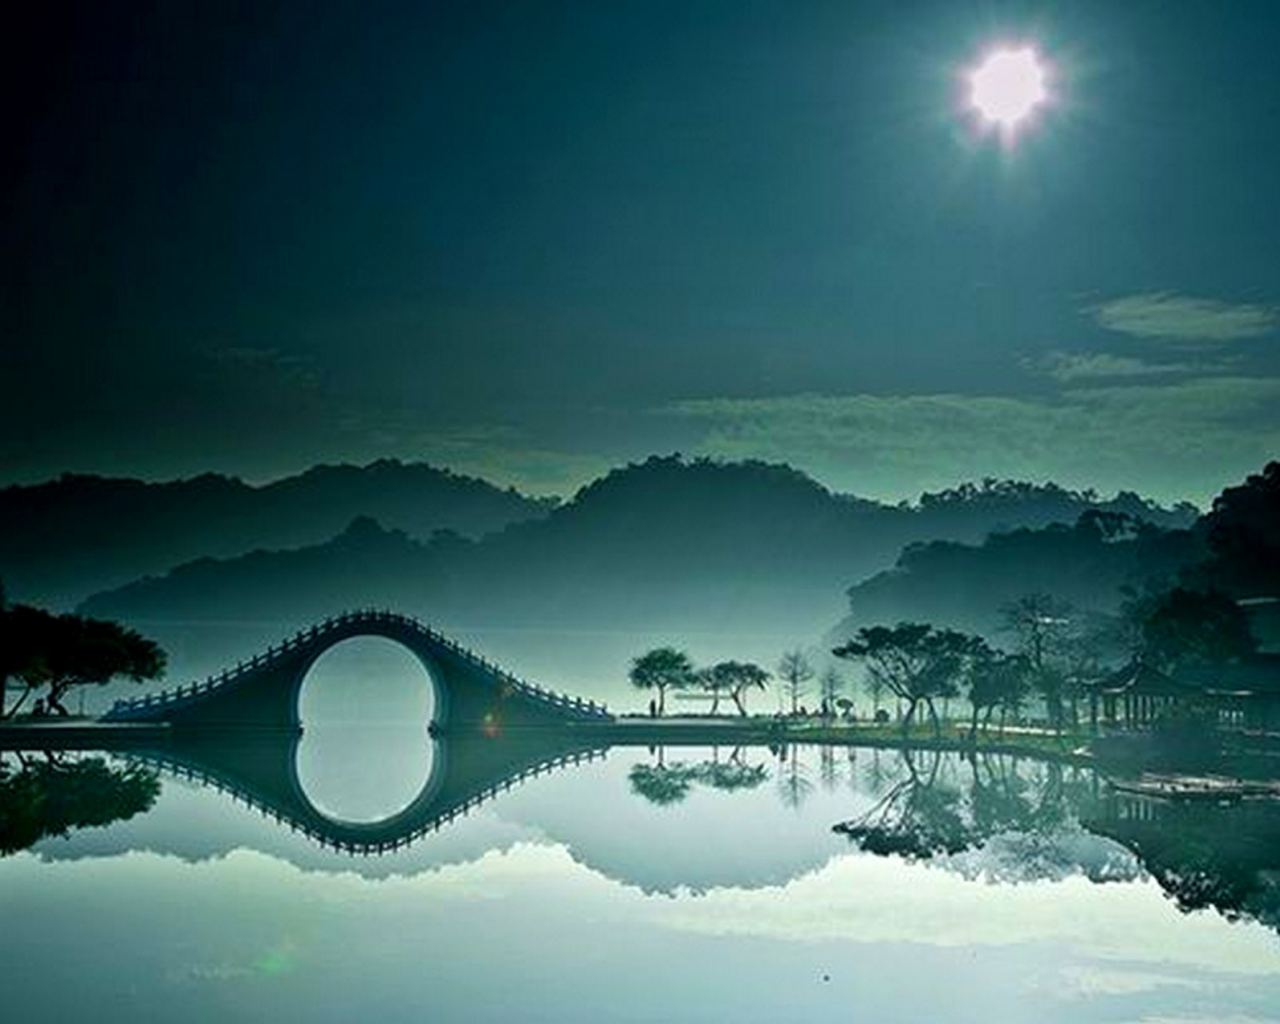 река, ночь, Лунный мост, Тайбэй, Тайвань